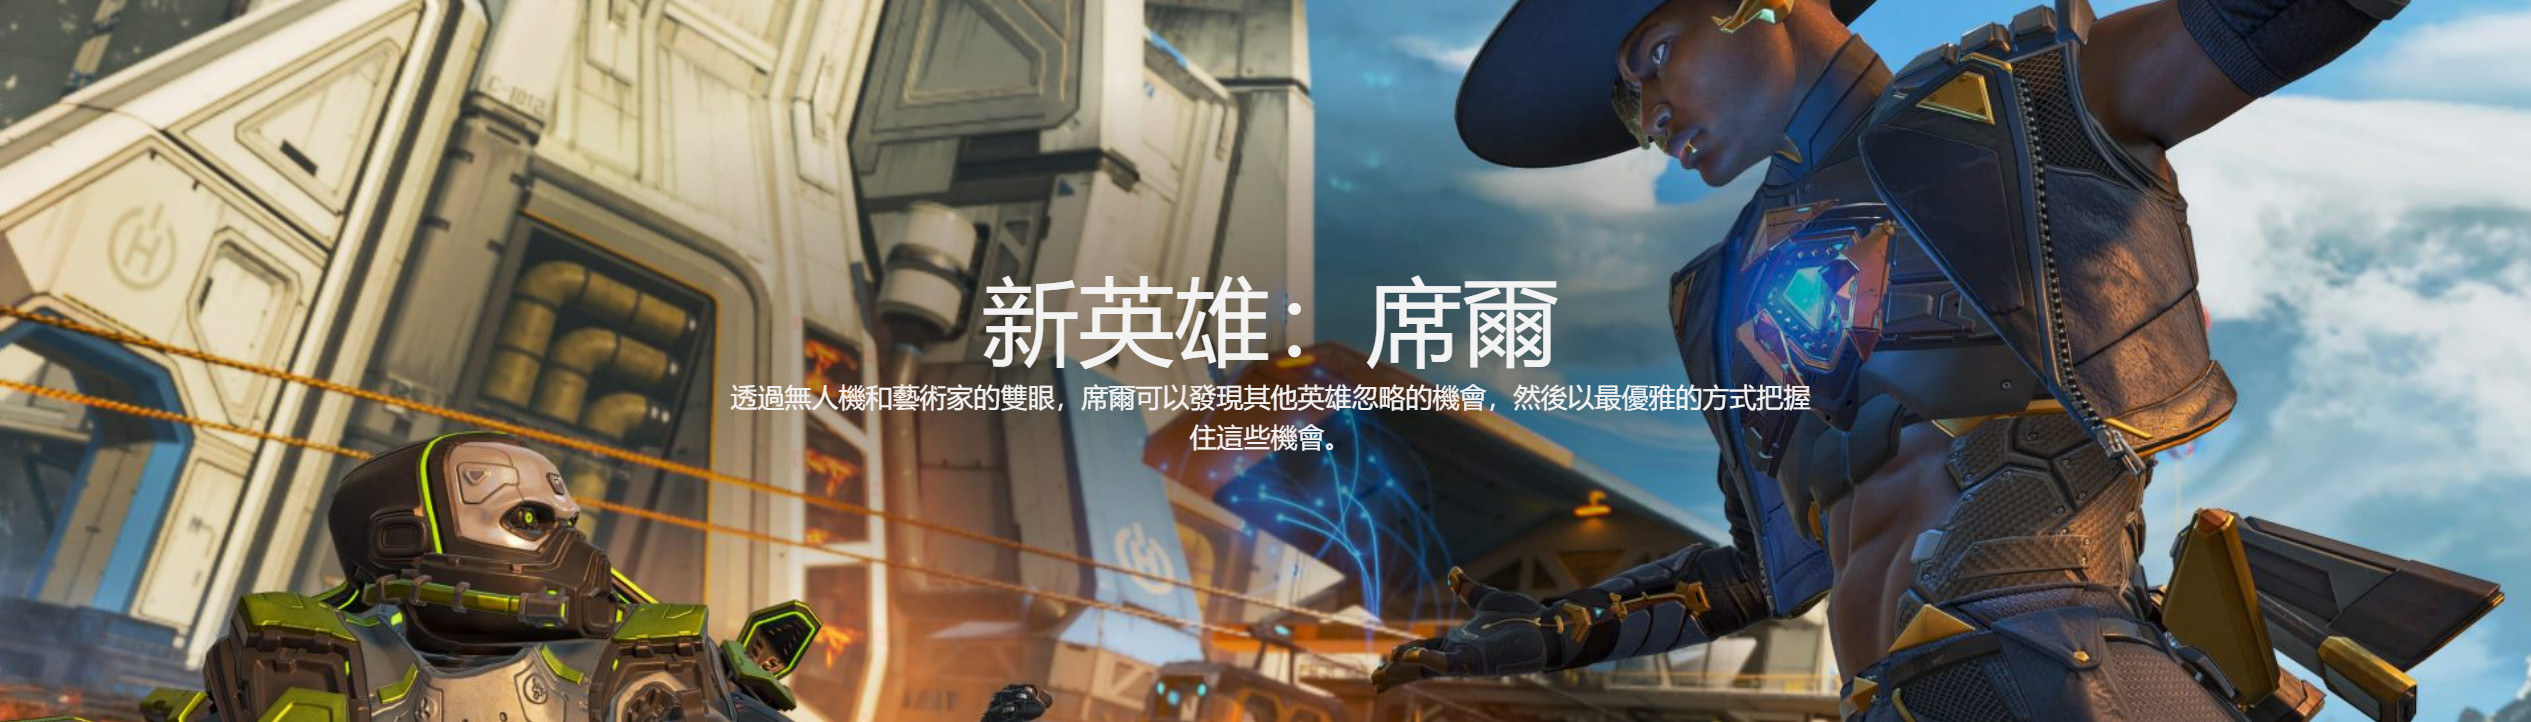 《Apex英雄》第十賽季外域故事“變形記”中文預告 新英雄席爾登場